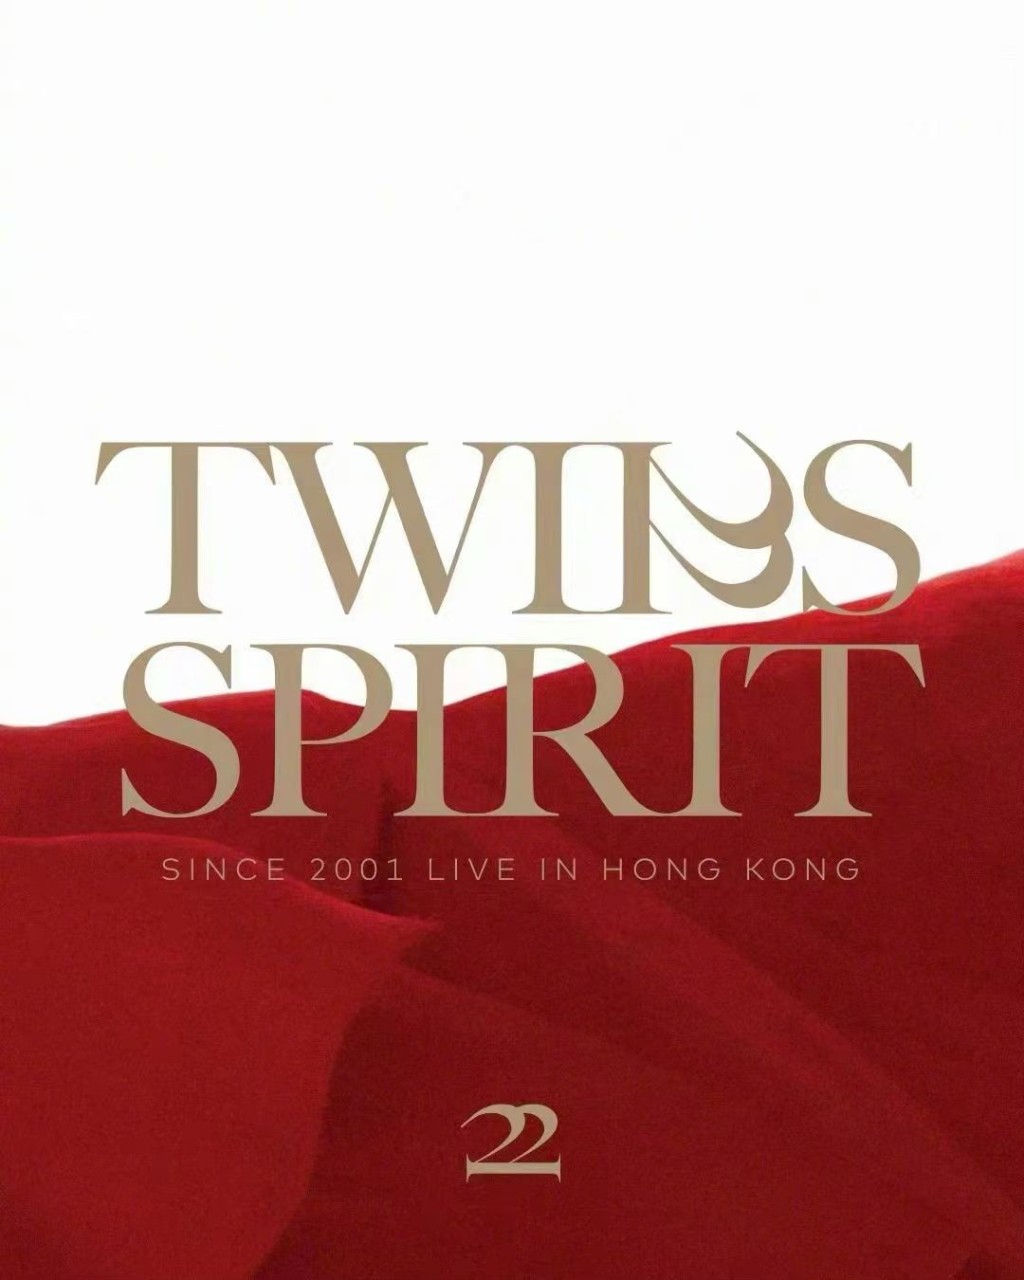 第三款是「TWINS SPIRIT」在正中间位置的款式。